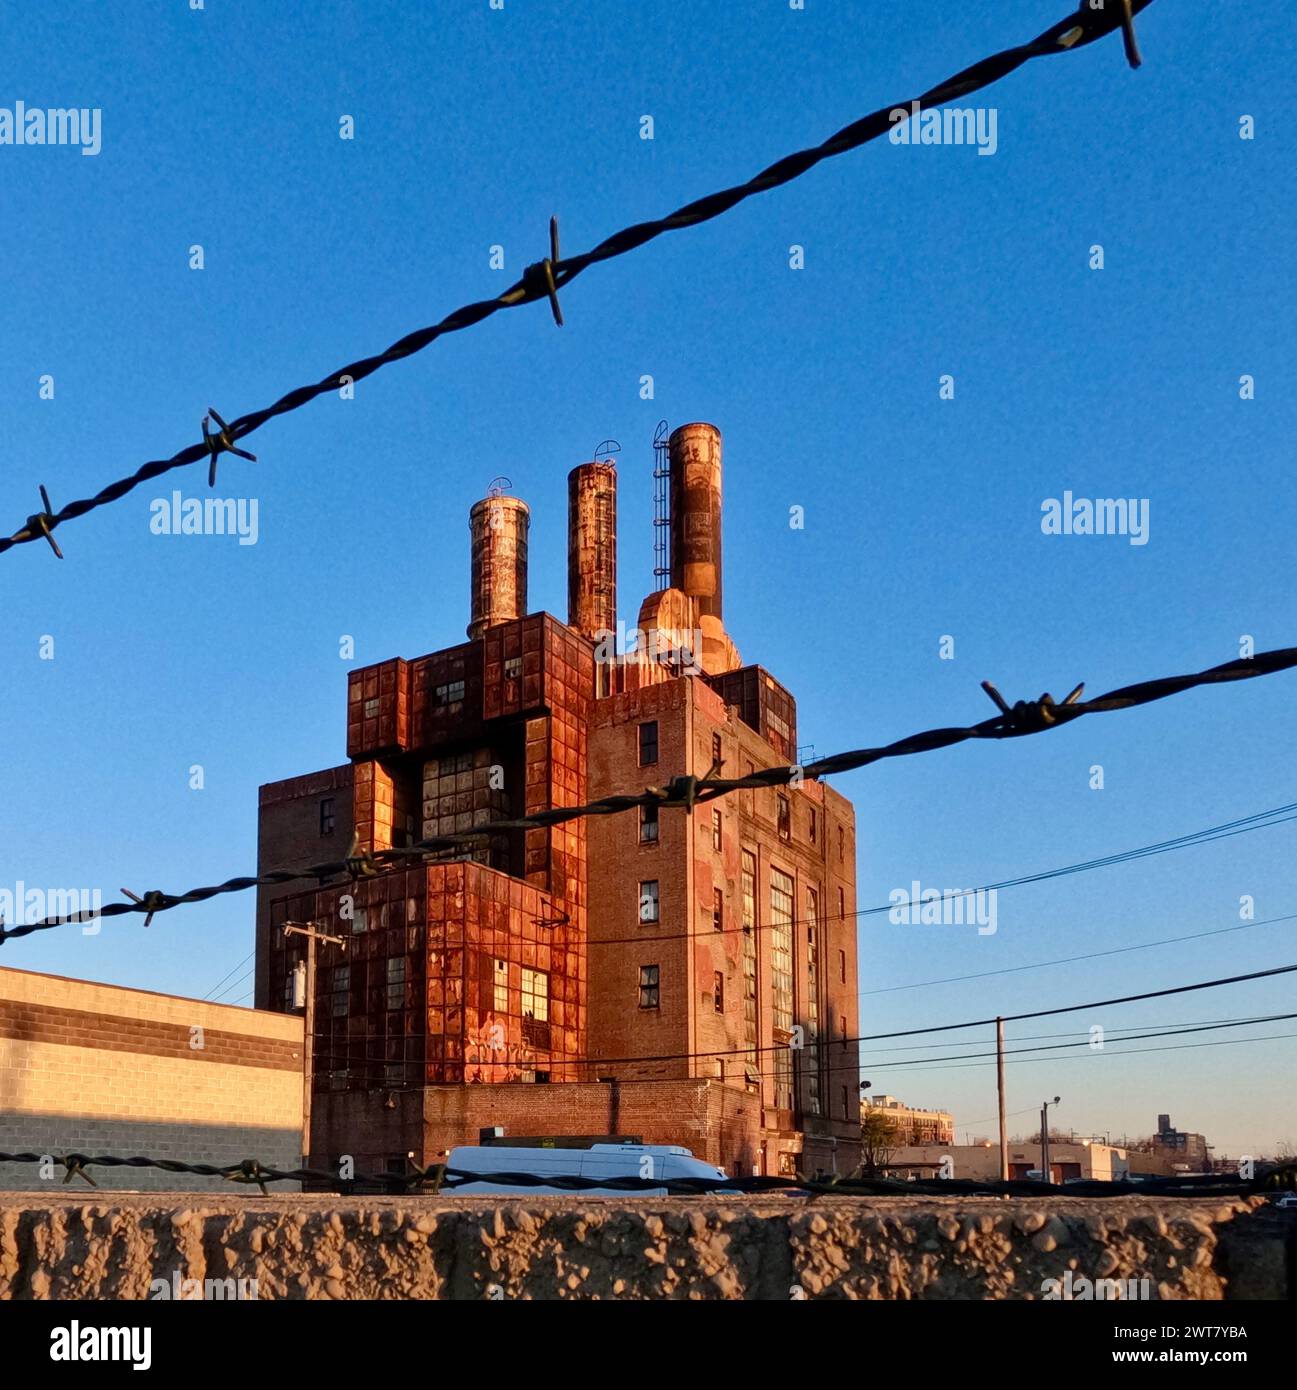 Il filo spinato incornicia il derelict Willow Steam Plant a Filadelfia, in zona Callowhill. Foto Stock